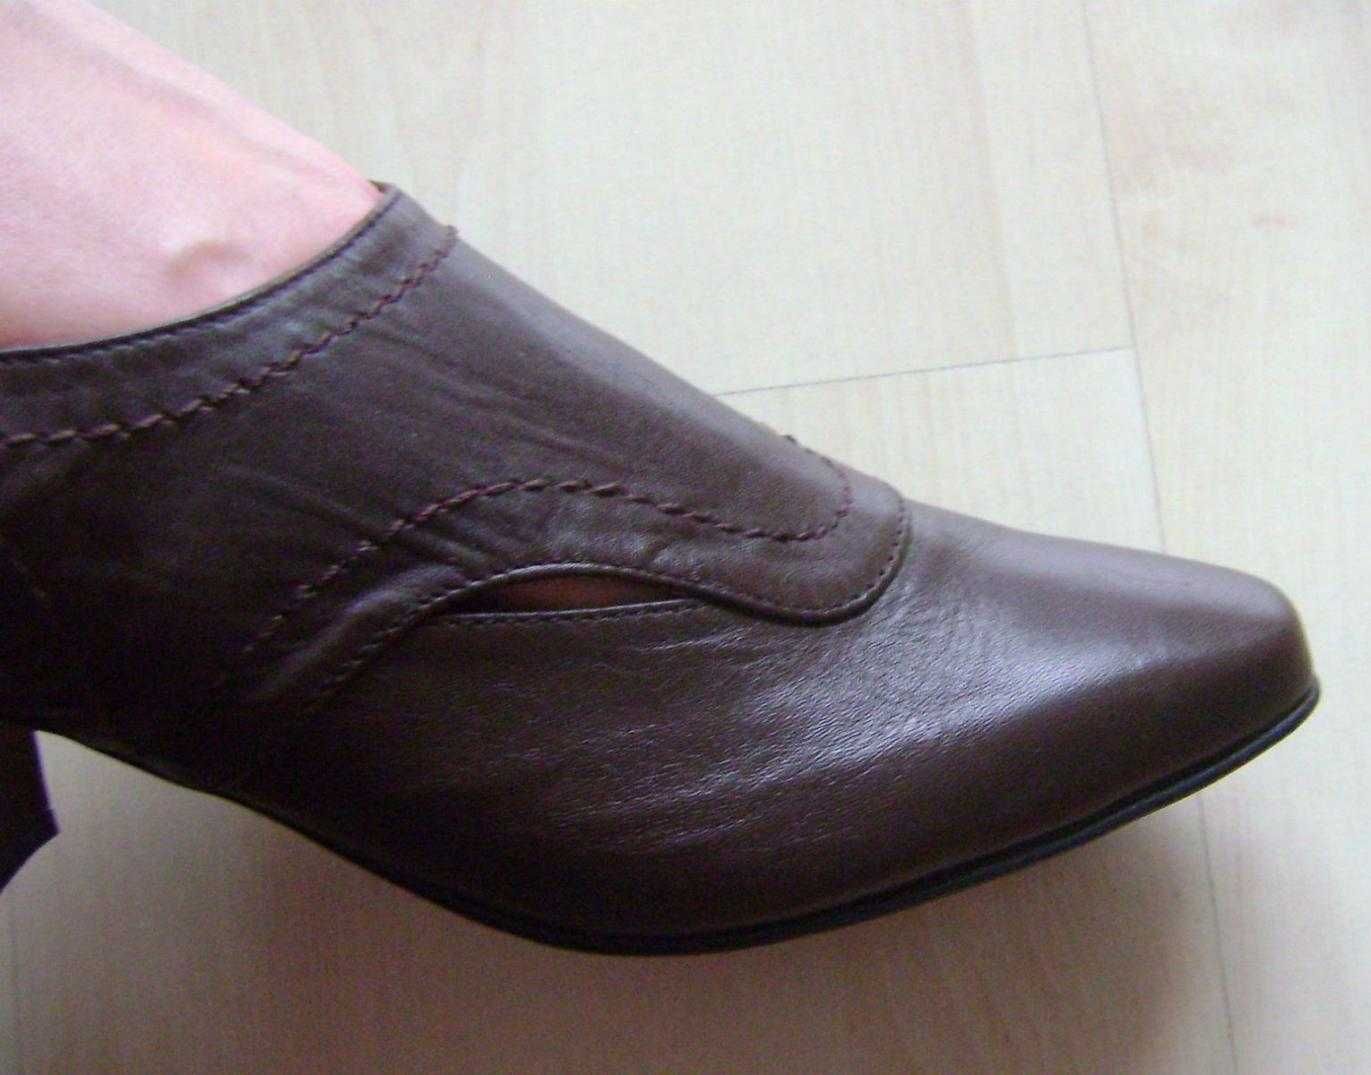 Syrena Nowe buty skóra naturalna roz 36